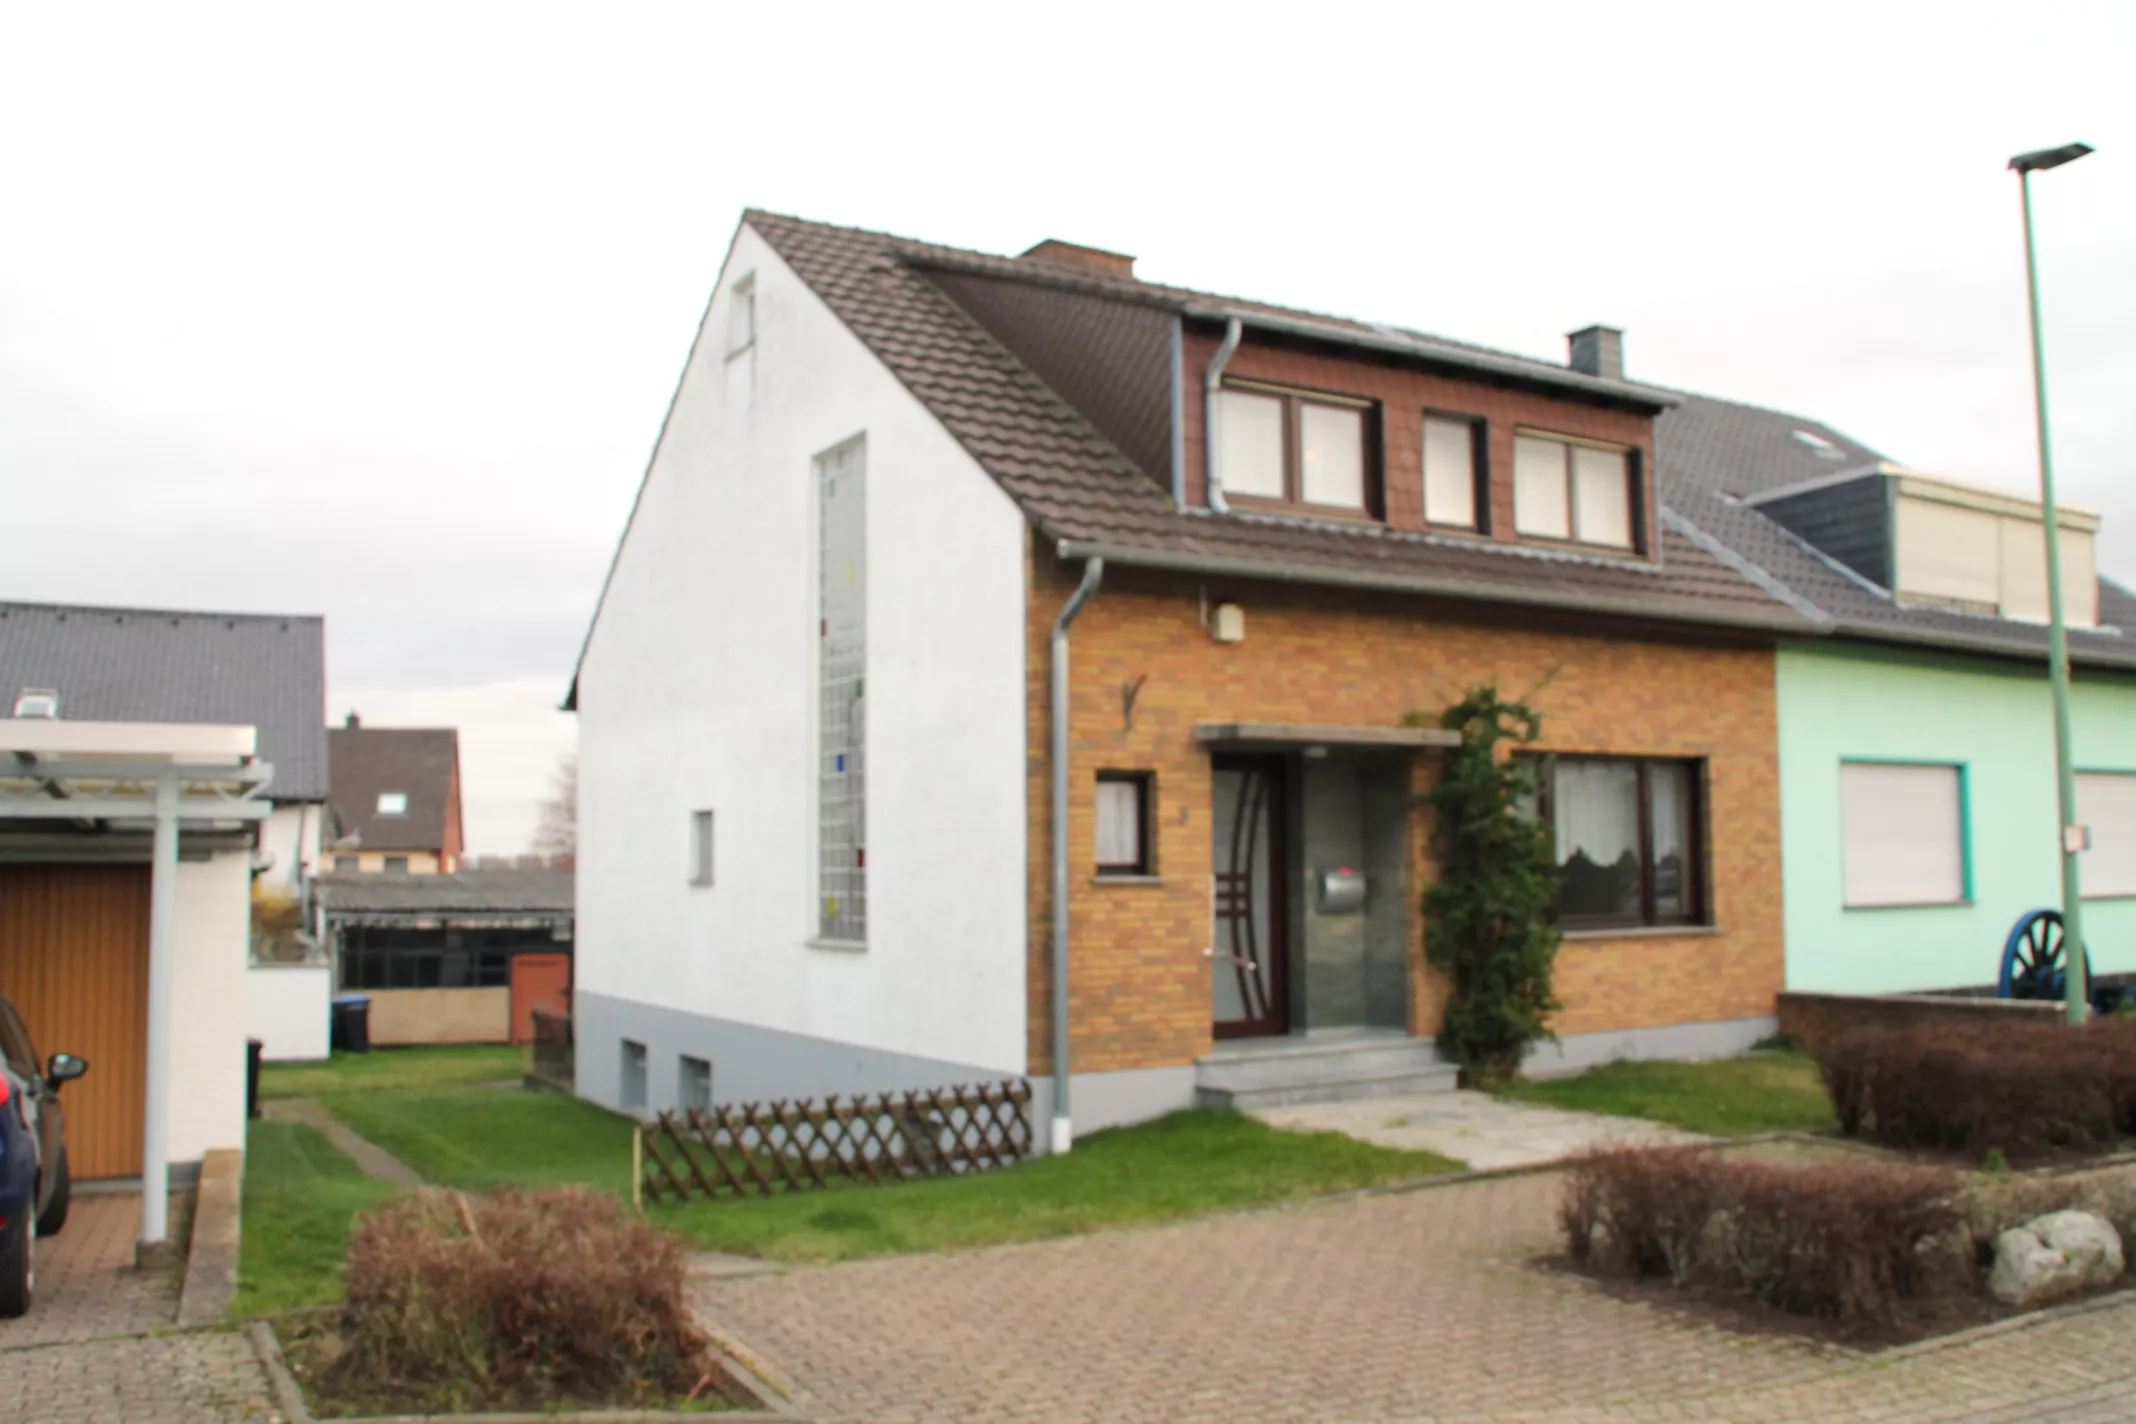 Doppelhaushälfte in Vettweiß-Ginnick plus Nebengebäude. Zugang von 2 Straßen.und 